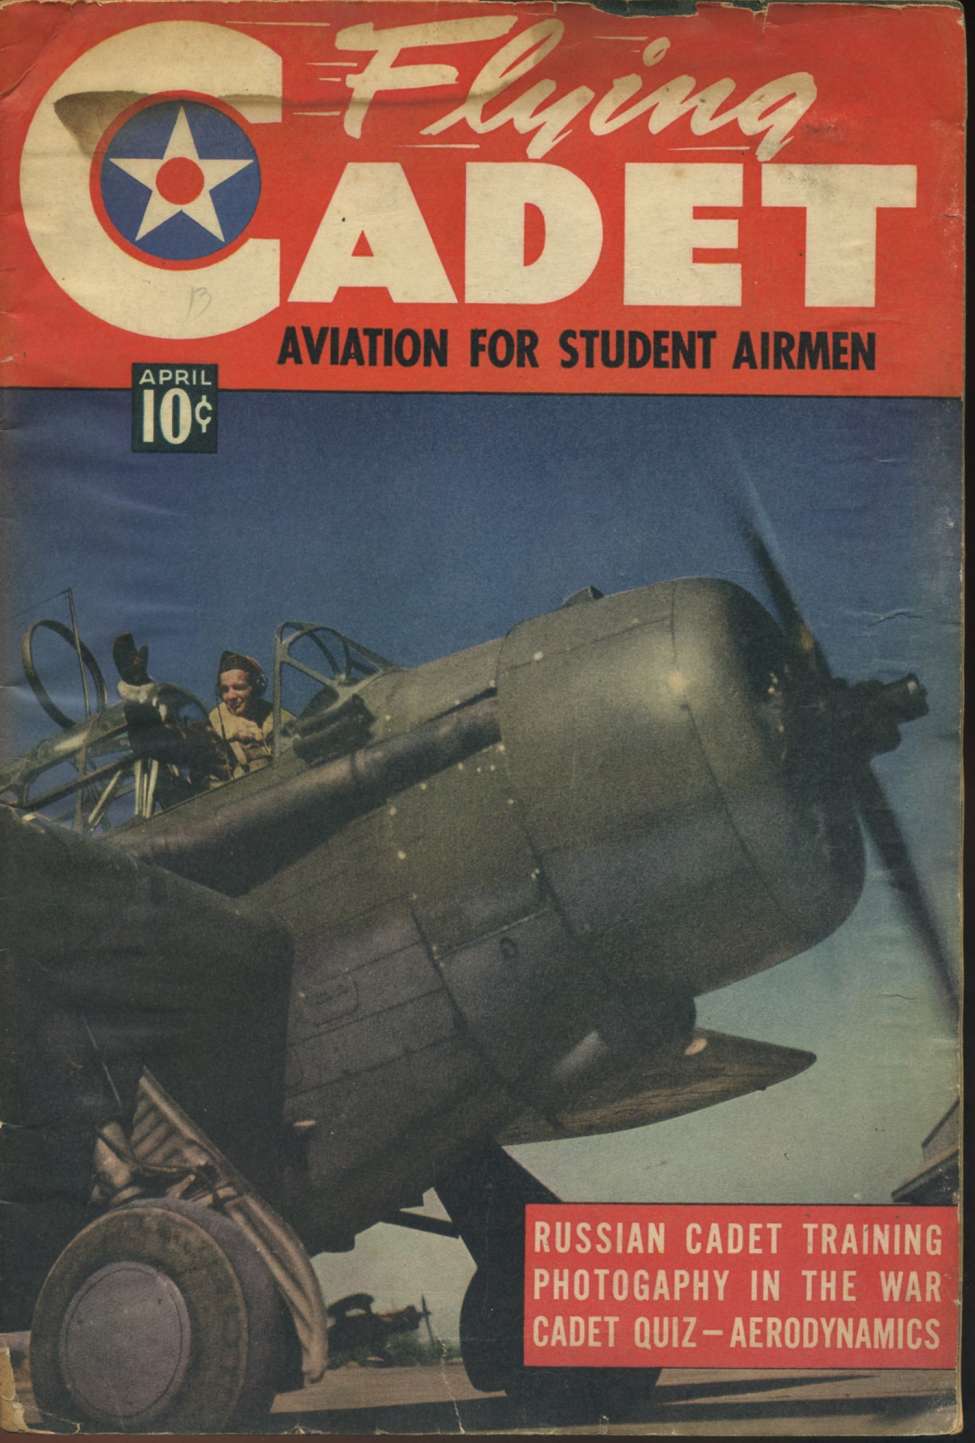 Comic Book Cover For Flying Cadet Magazine v1 3